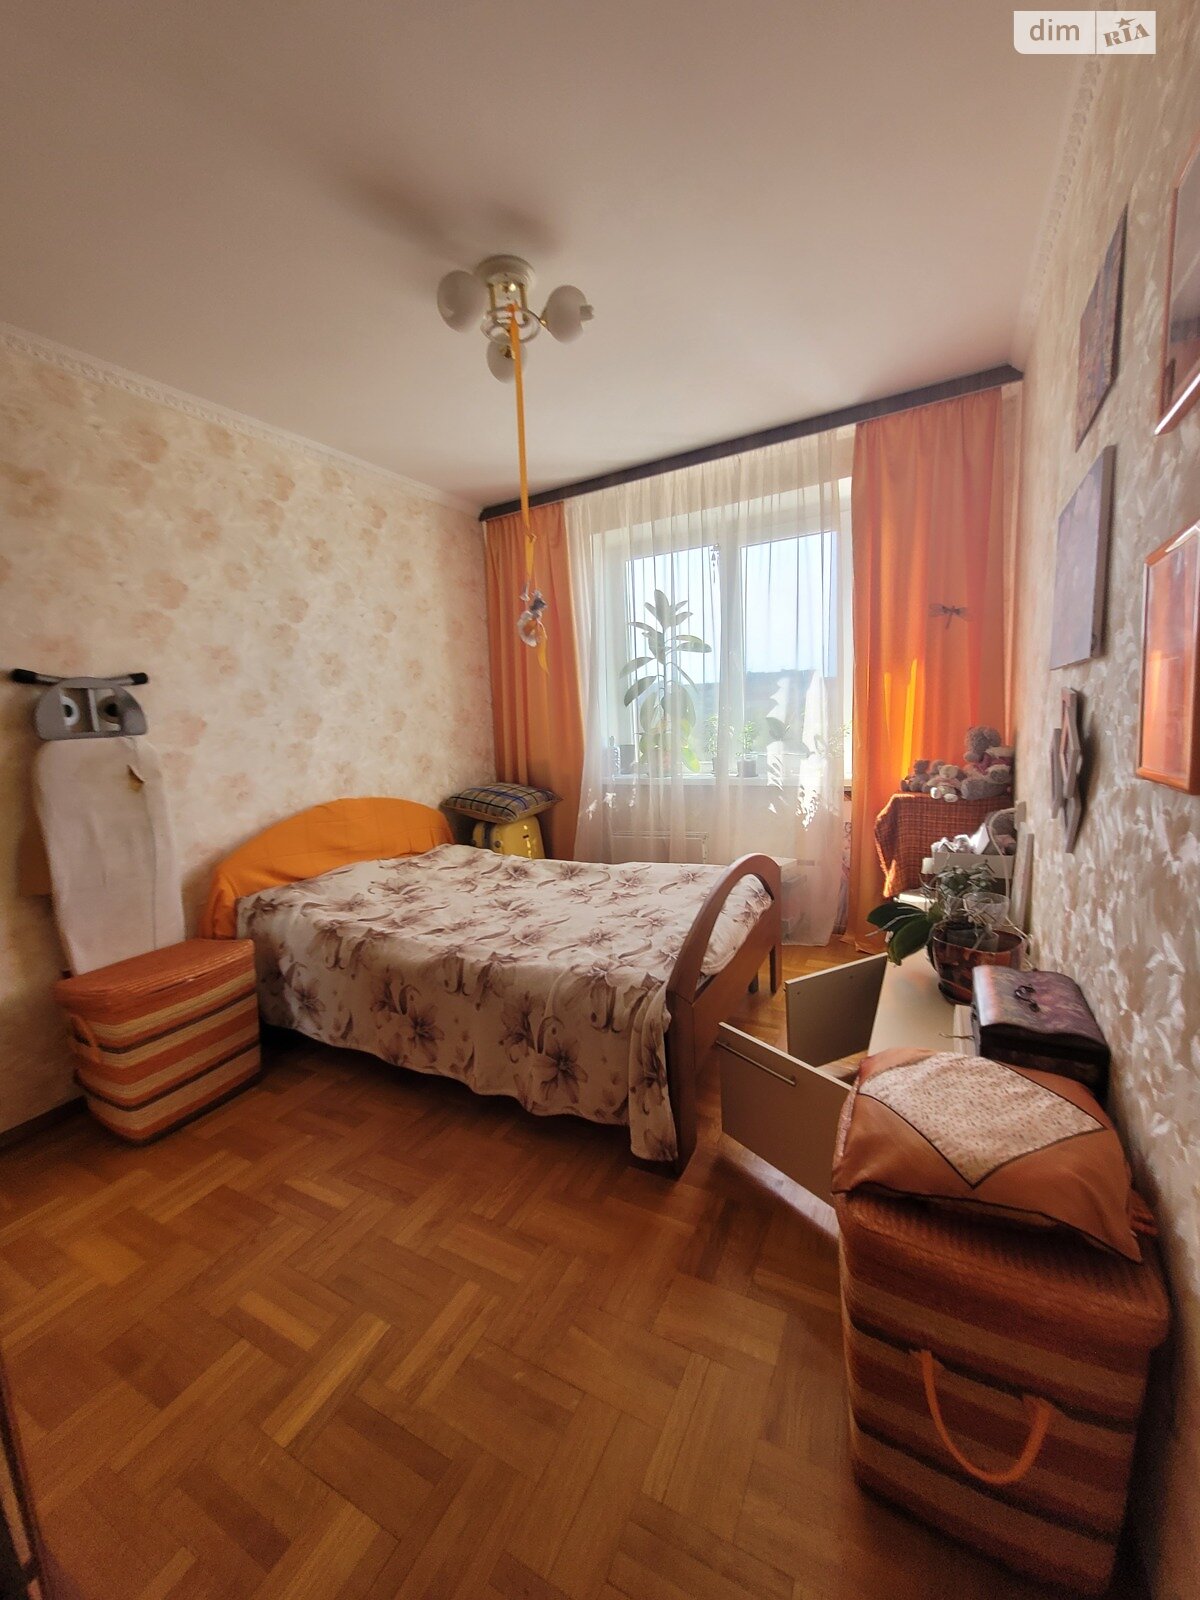 Продажа двухкомнатной квартиры в Житомире, на ул. Клосовского Александра 14, район Чулочная фабрика фото 1